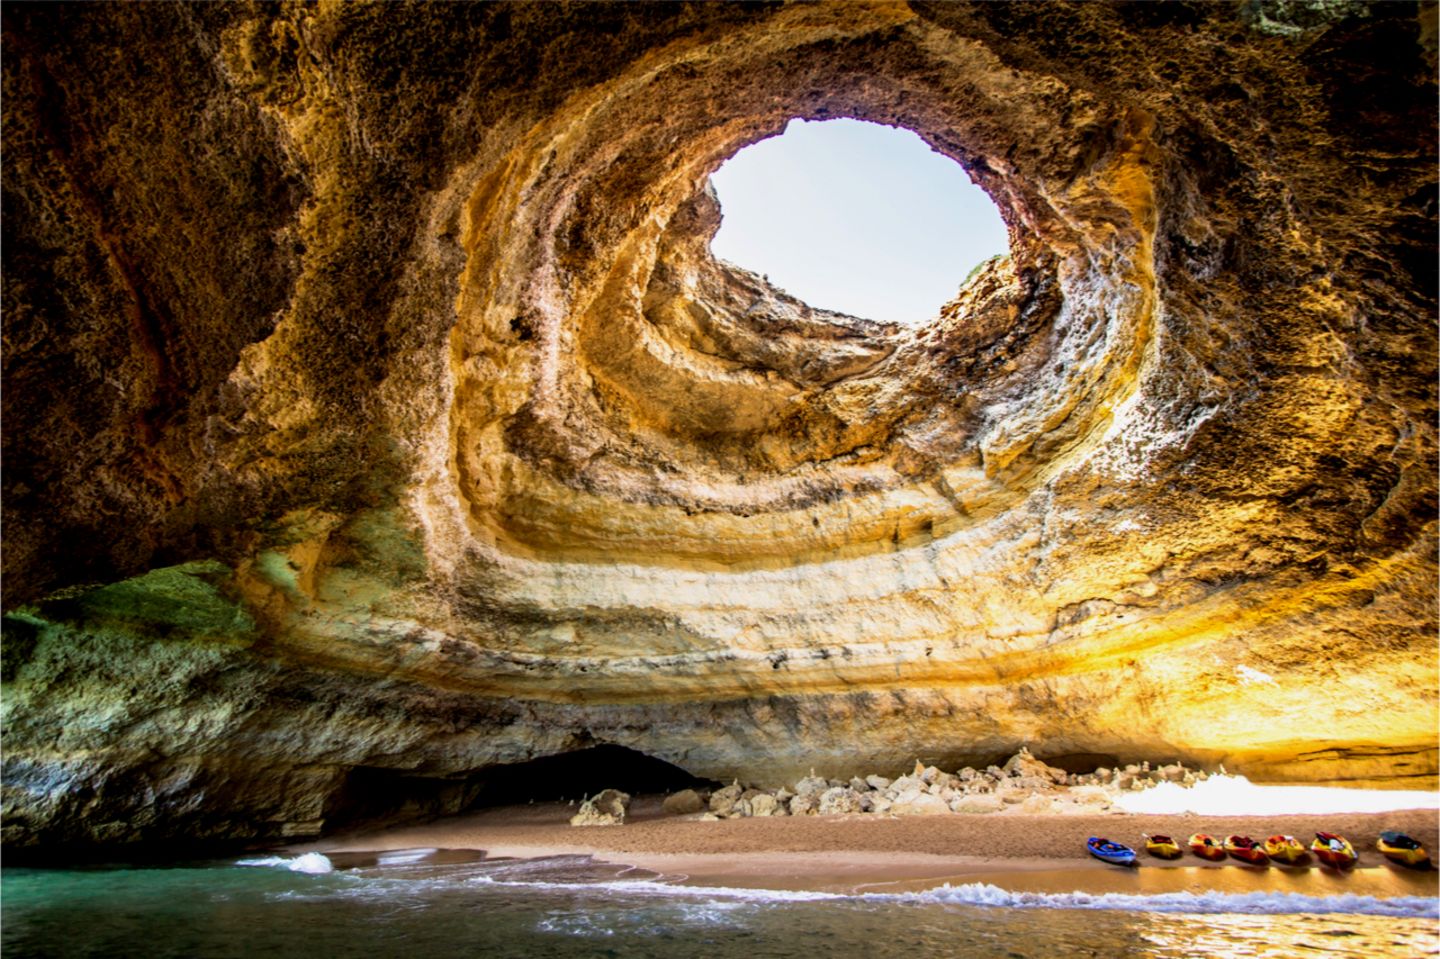 Benagil-Meereshöhle